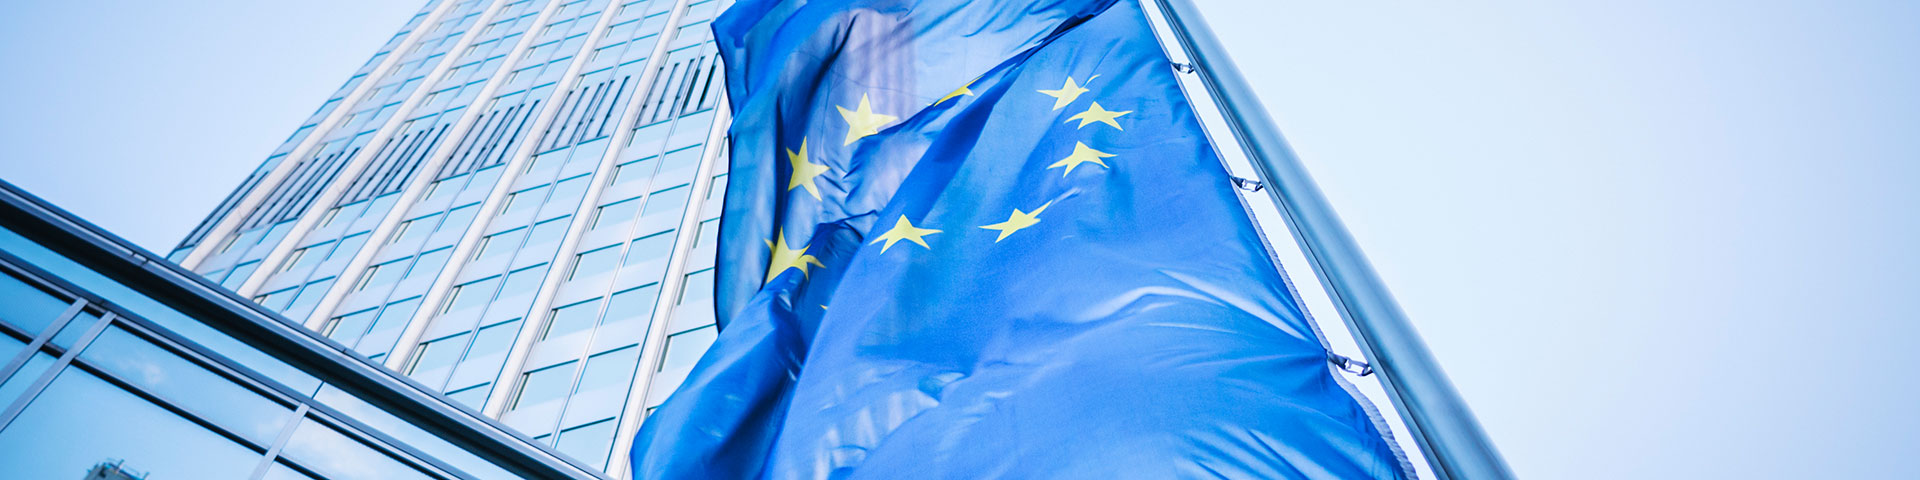 EU-Flagge zu Europäische Wirtschaftspolitik